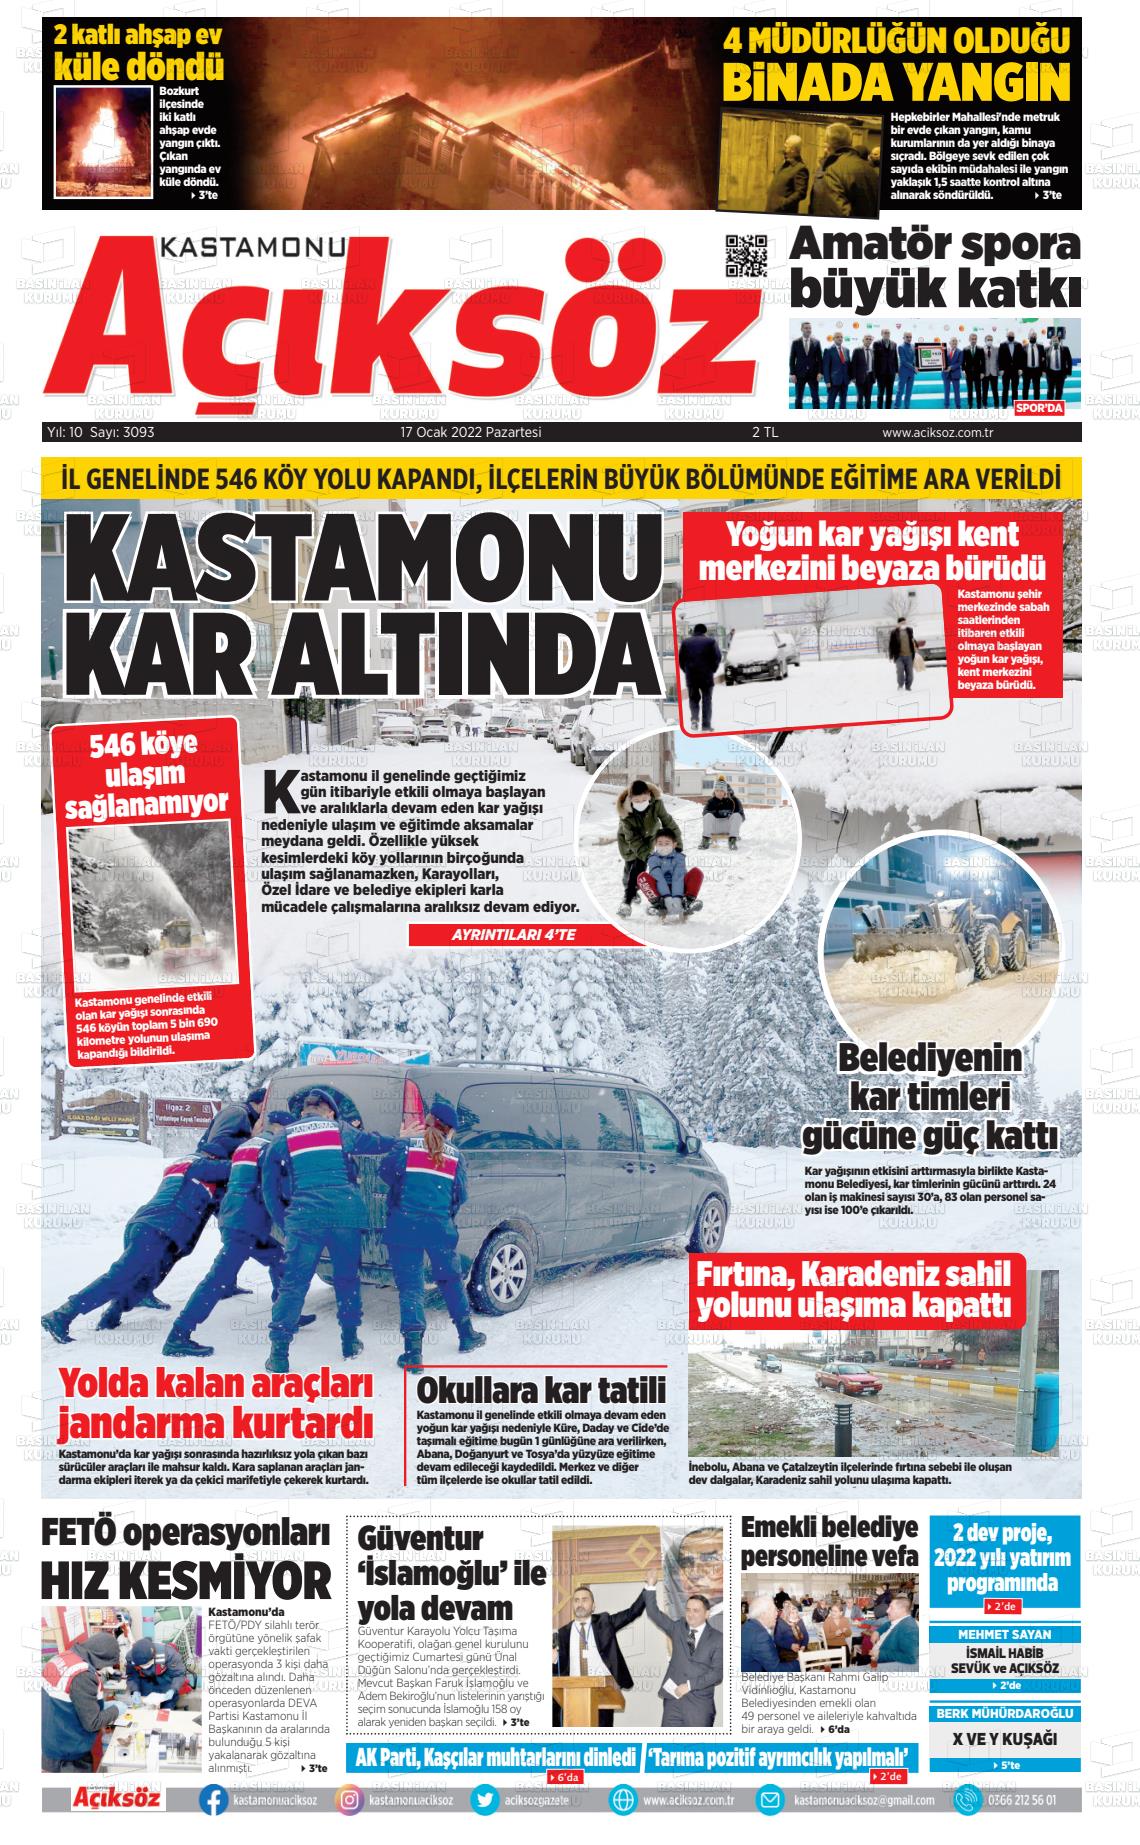 17 Ocak 2022 KASTAMONU AÇIKSÖZ GAZETESİ Gazete Manşeti